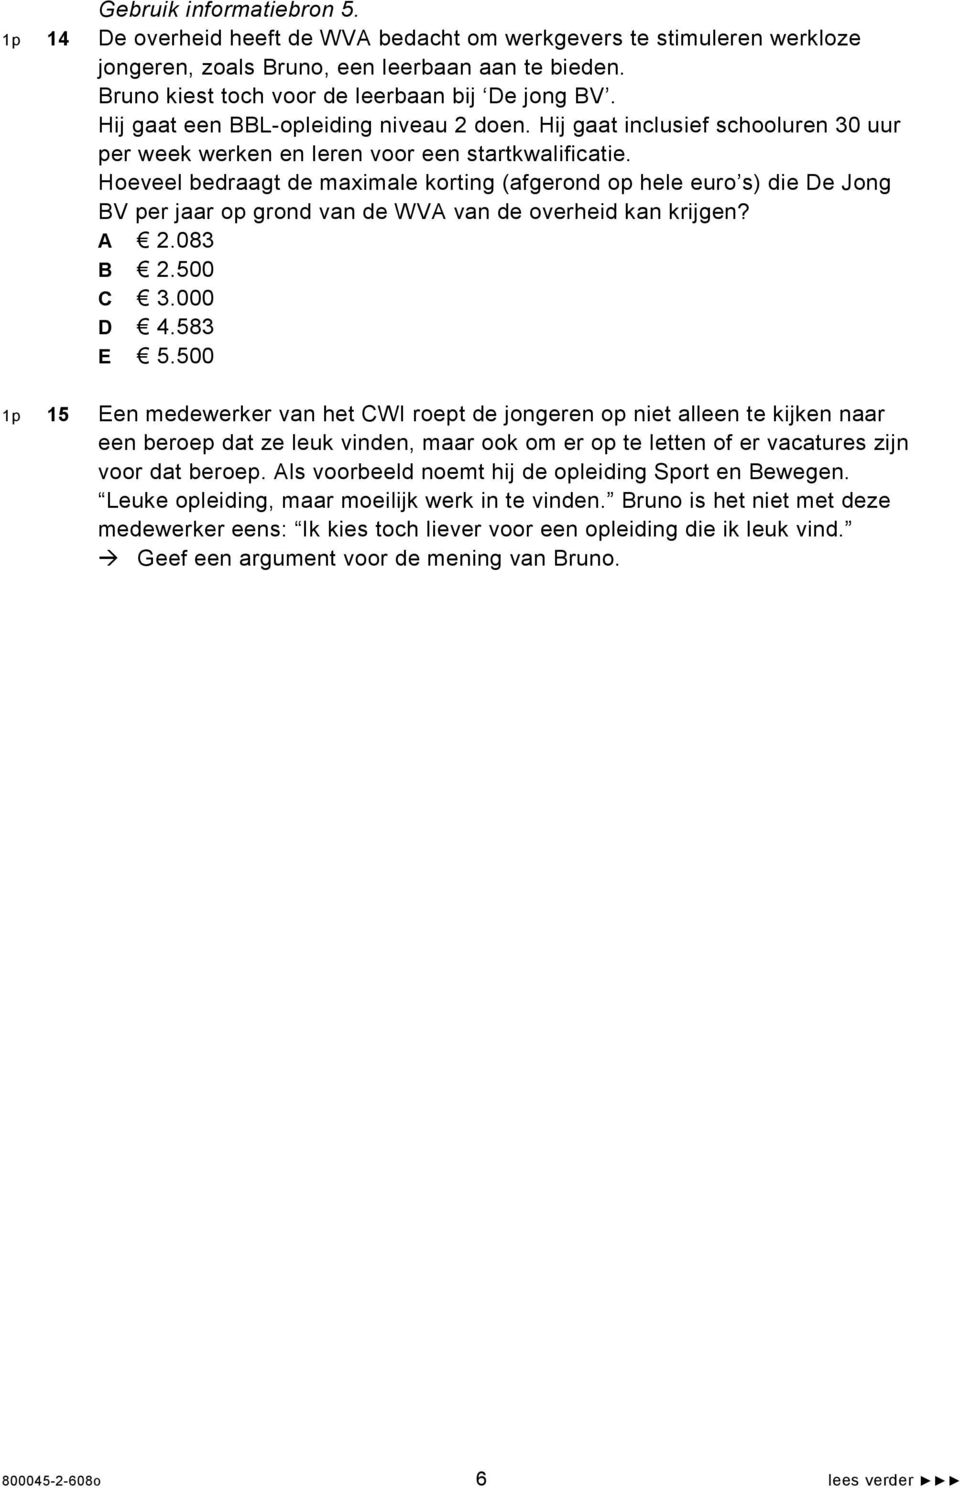 Hoeveel bedraagt de maximale korting (afgerond op hele euro s) die De Jong BV per jaar op grond van de WVA van de overheid kan krijgen? A 2.083 B 2.500 C 3.000 D 4.583 E 5.